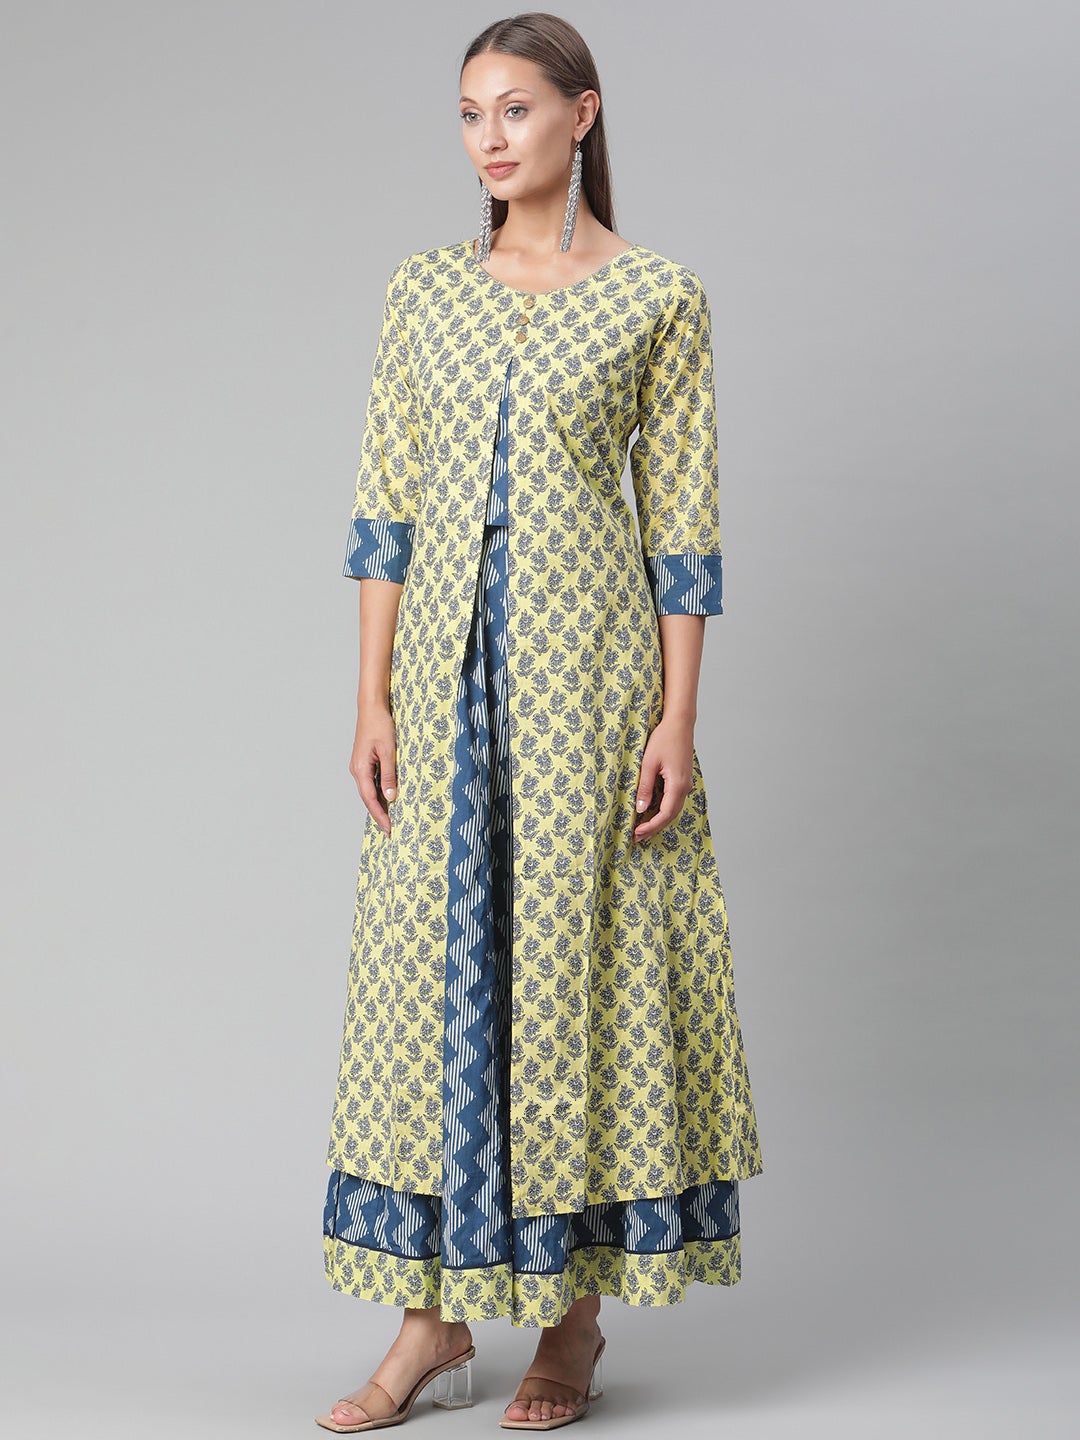 Yellow Shurg Style Cotton kurta with Skirt